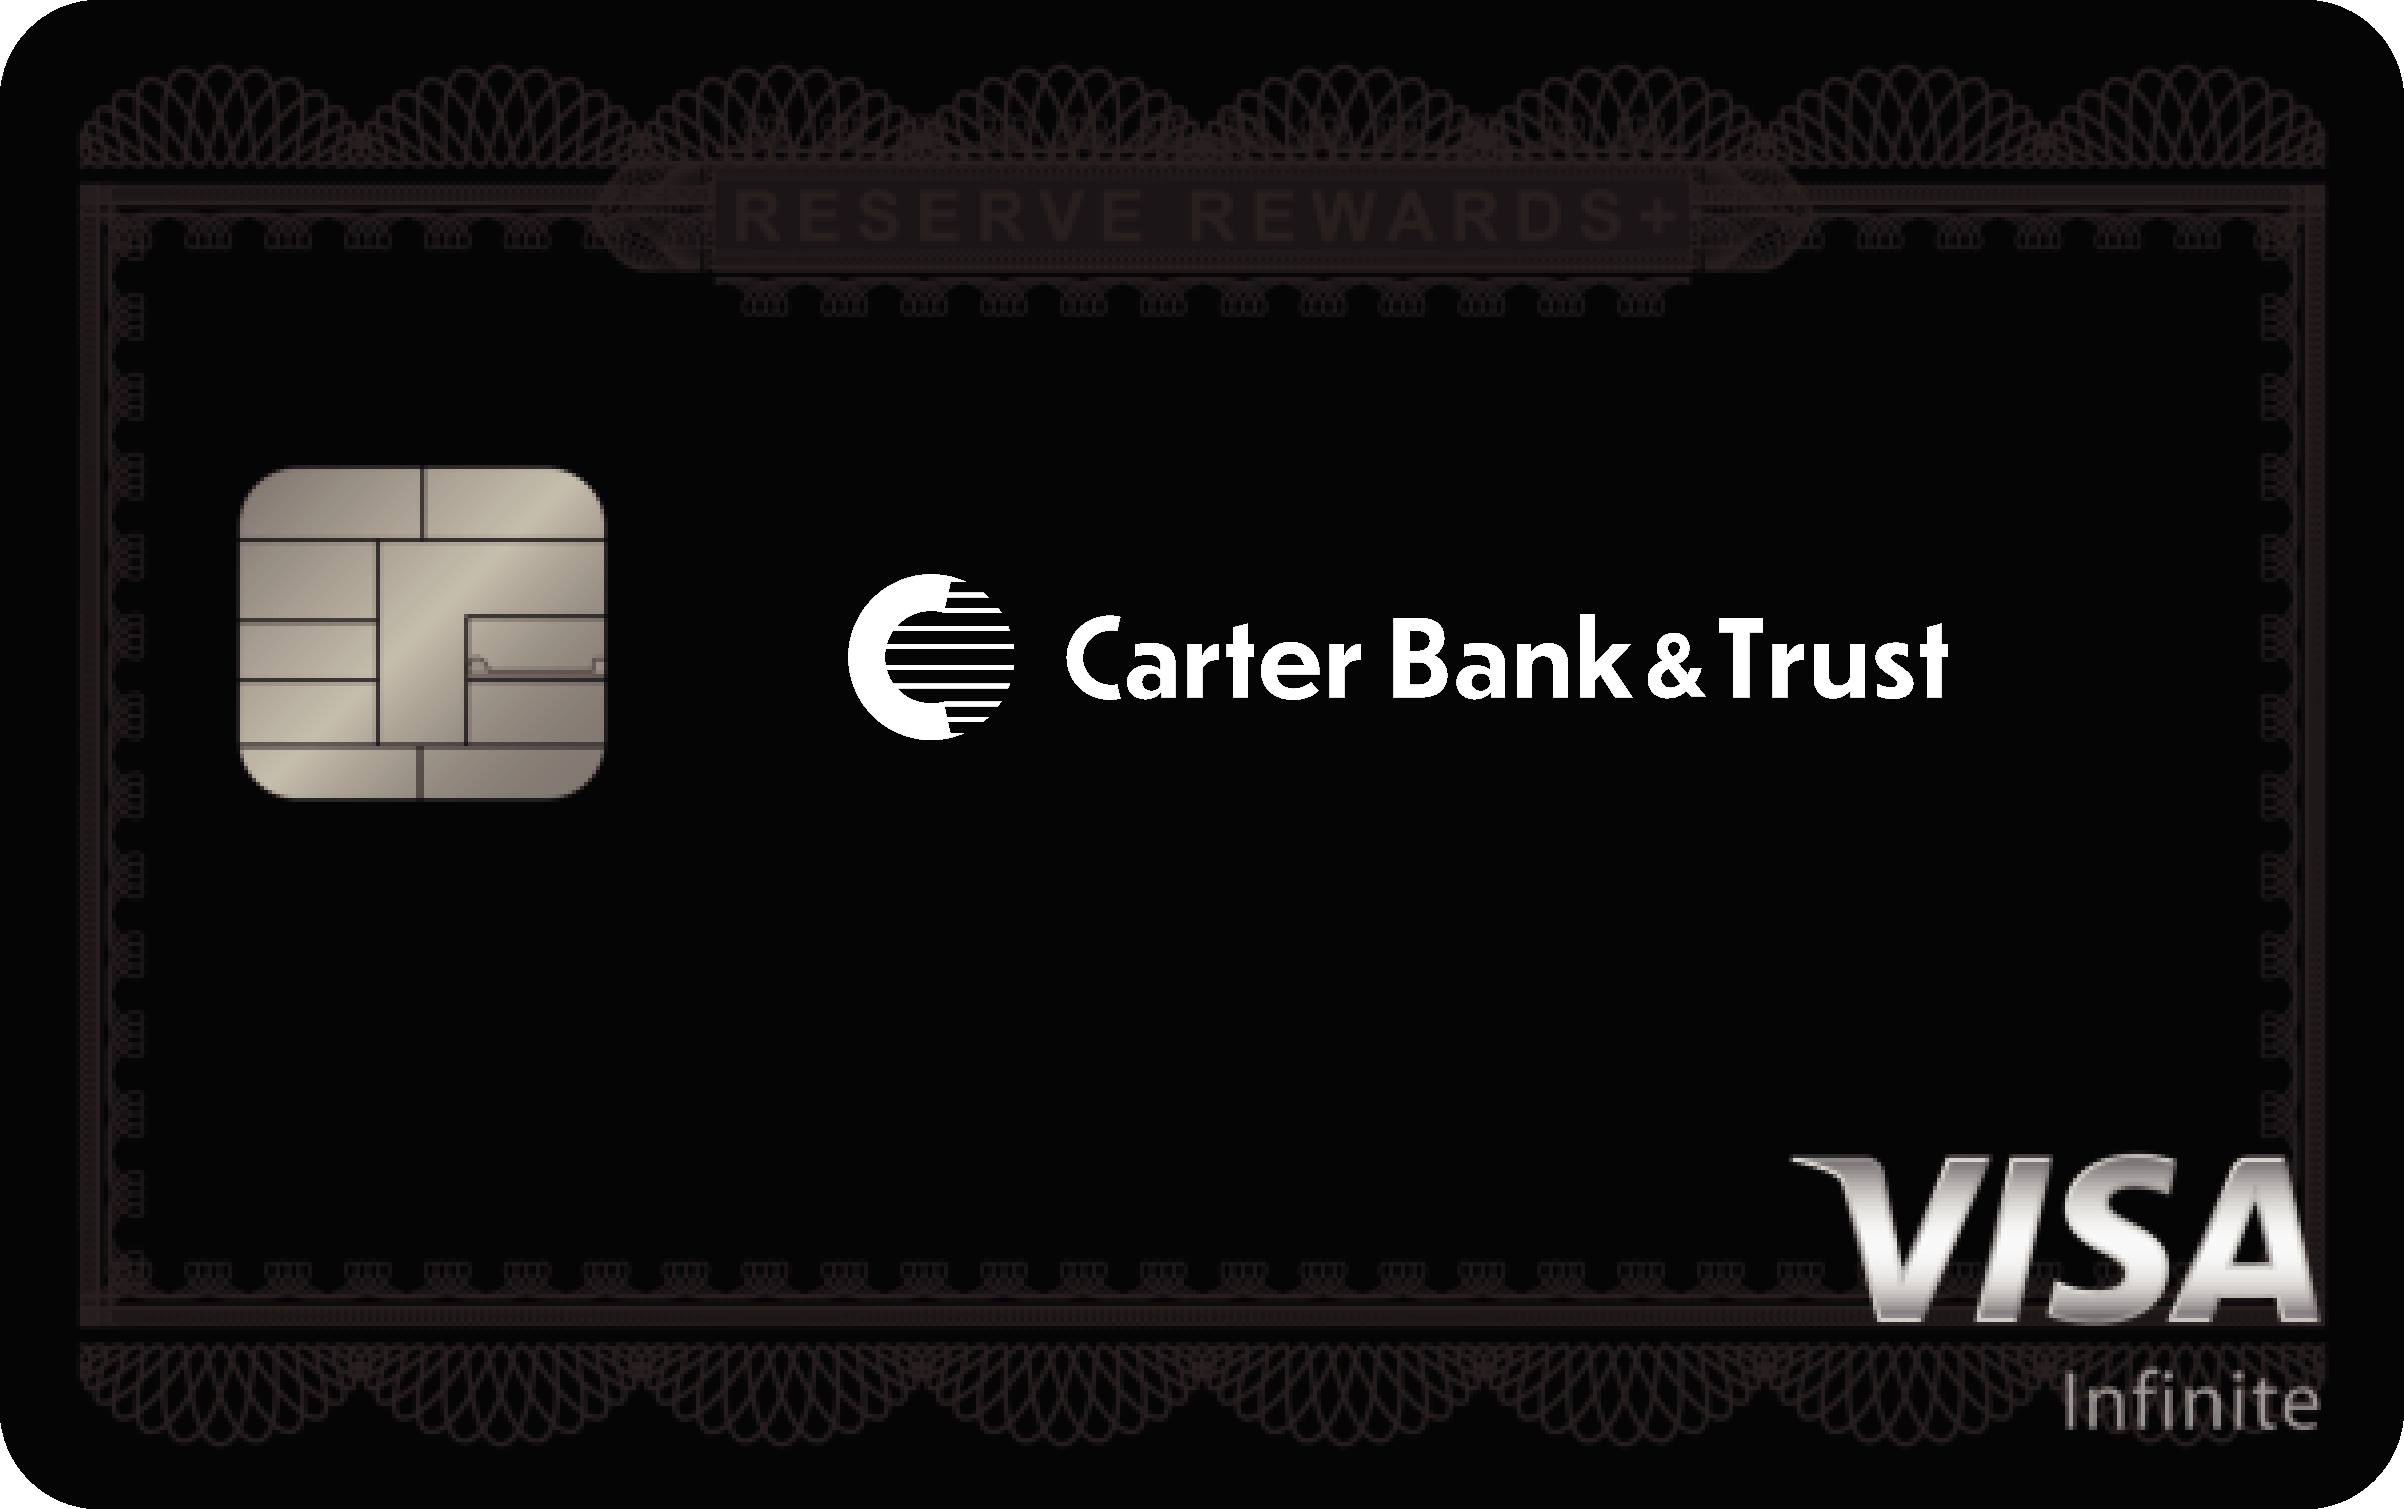 Carter Bank & Trust